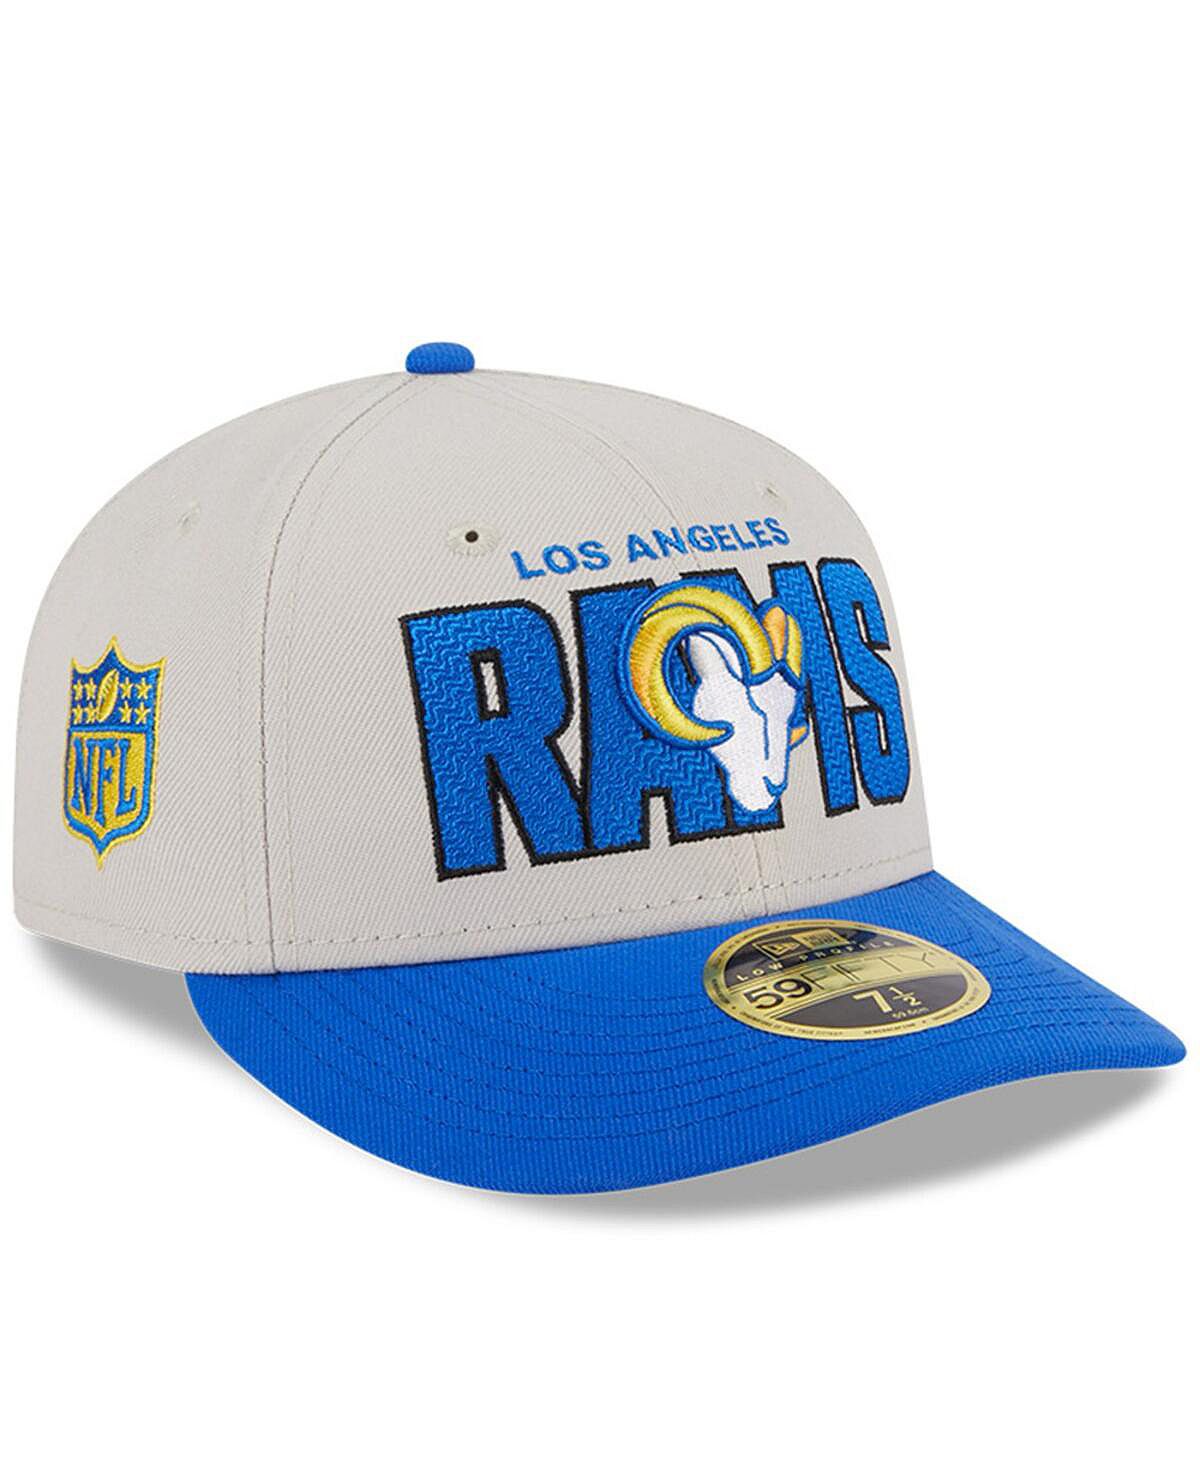 Мужская облегающая шляпа Stone, Royal Los Angeles Rams NFL Draft 2023, низкопрофильная 59FIFTY New Era